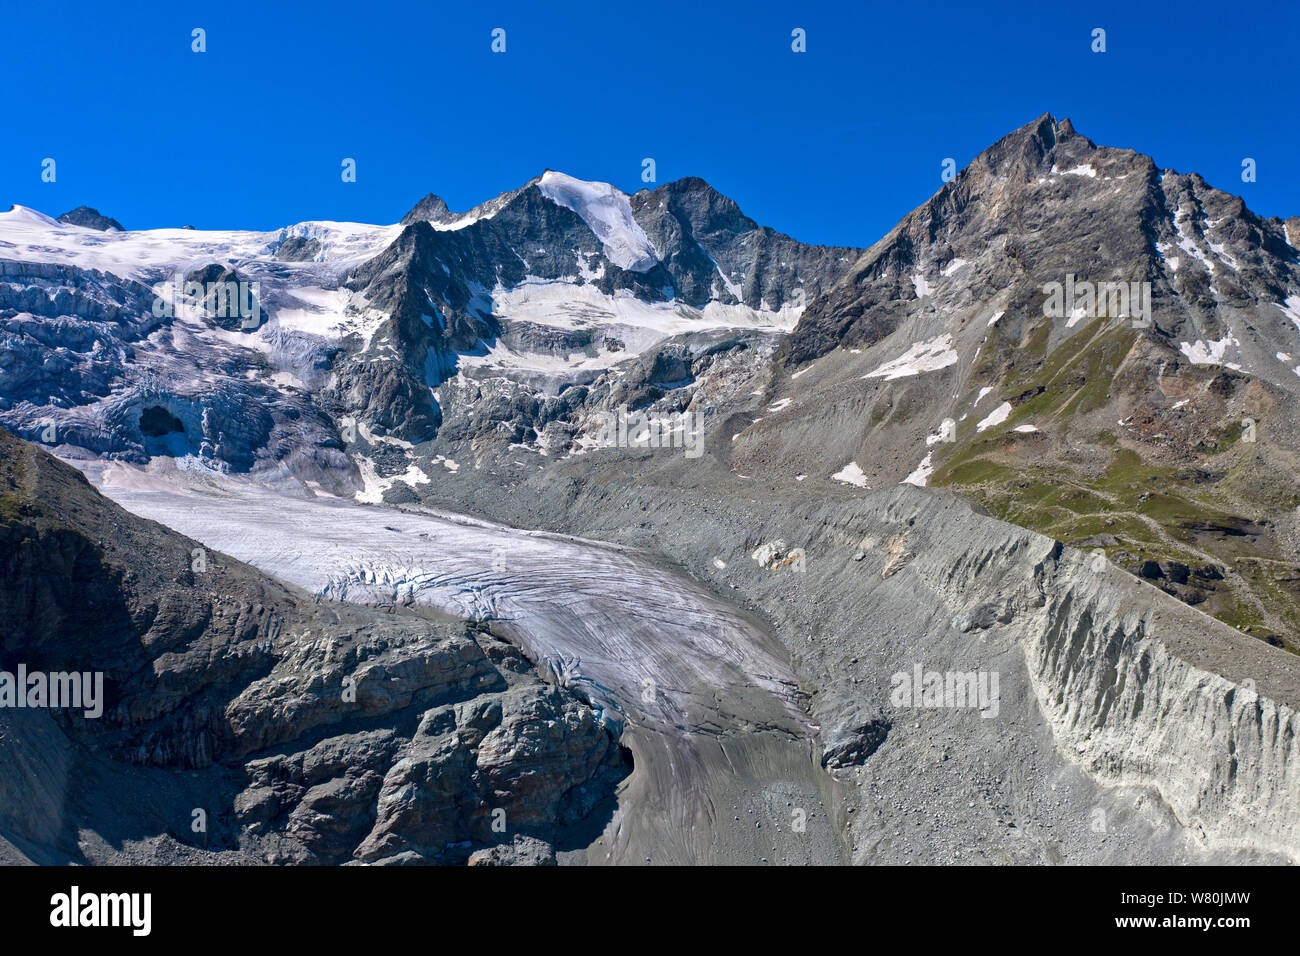 Moiry Glacier, Glacier de Moiry, flowing down Pointe de Mourti, ending in a glacier tongue and moraines, Grimentz,Val d'Anniviers, Valais, Switzerland Stock Photo